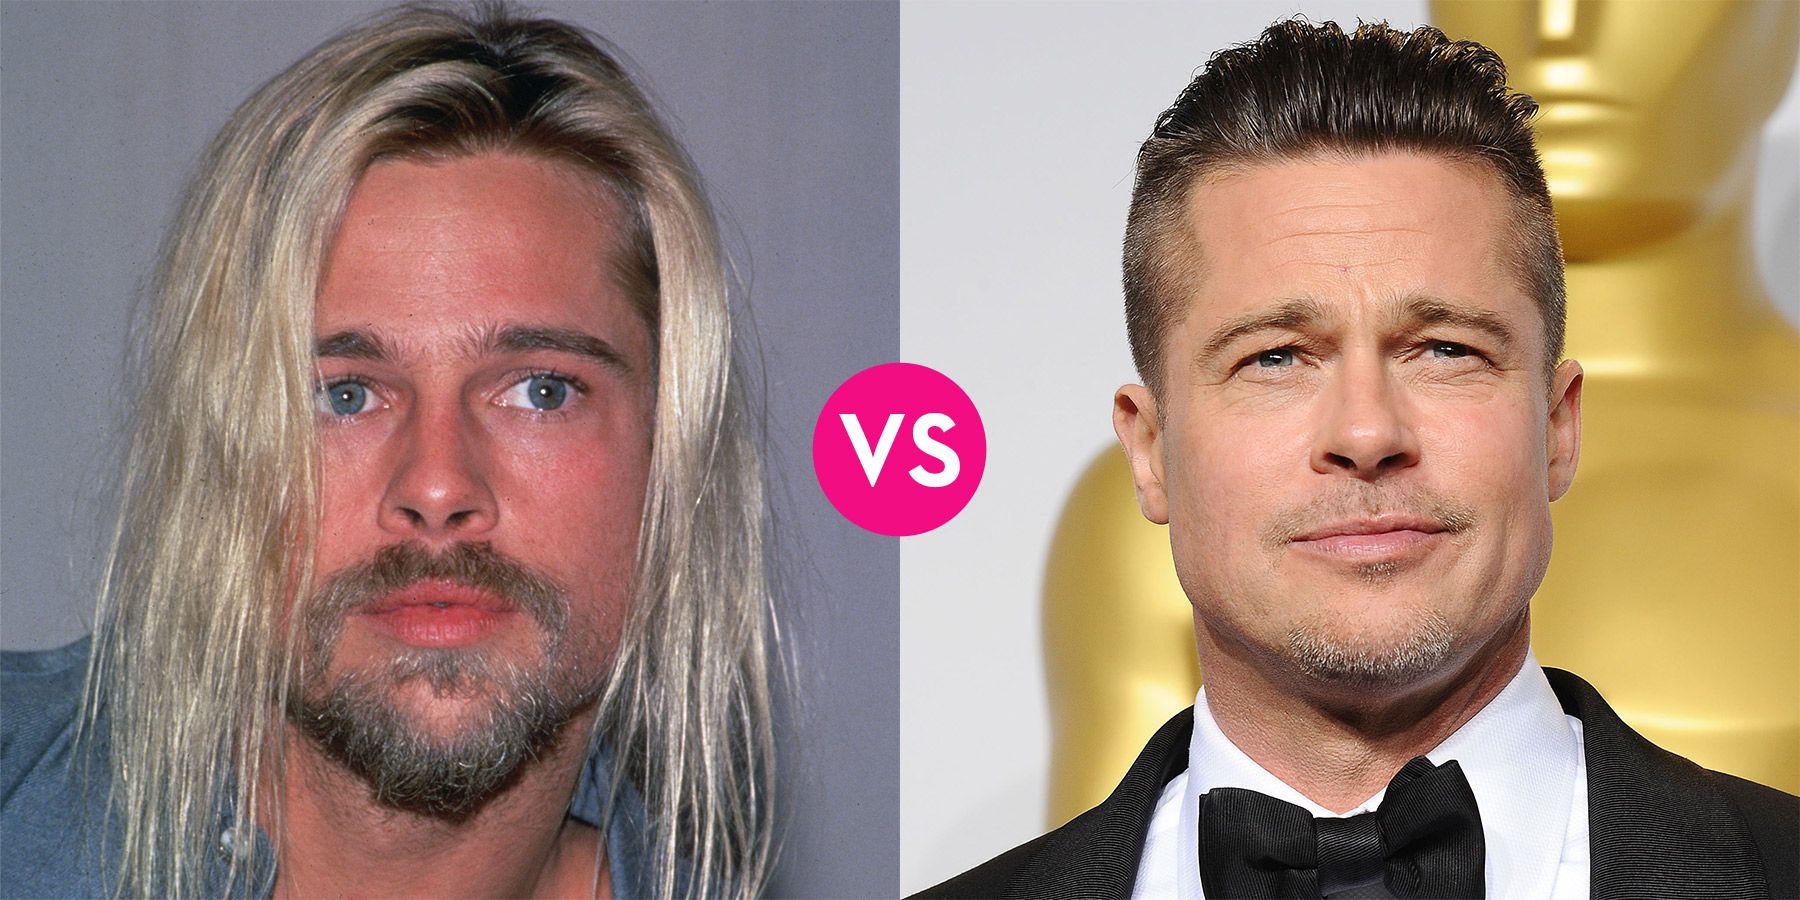 Long Hair vs Short Hair: Which Is Better On Men?